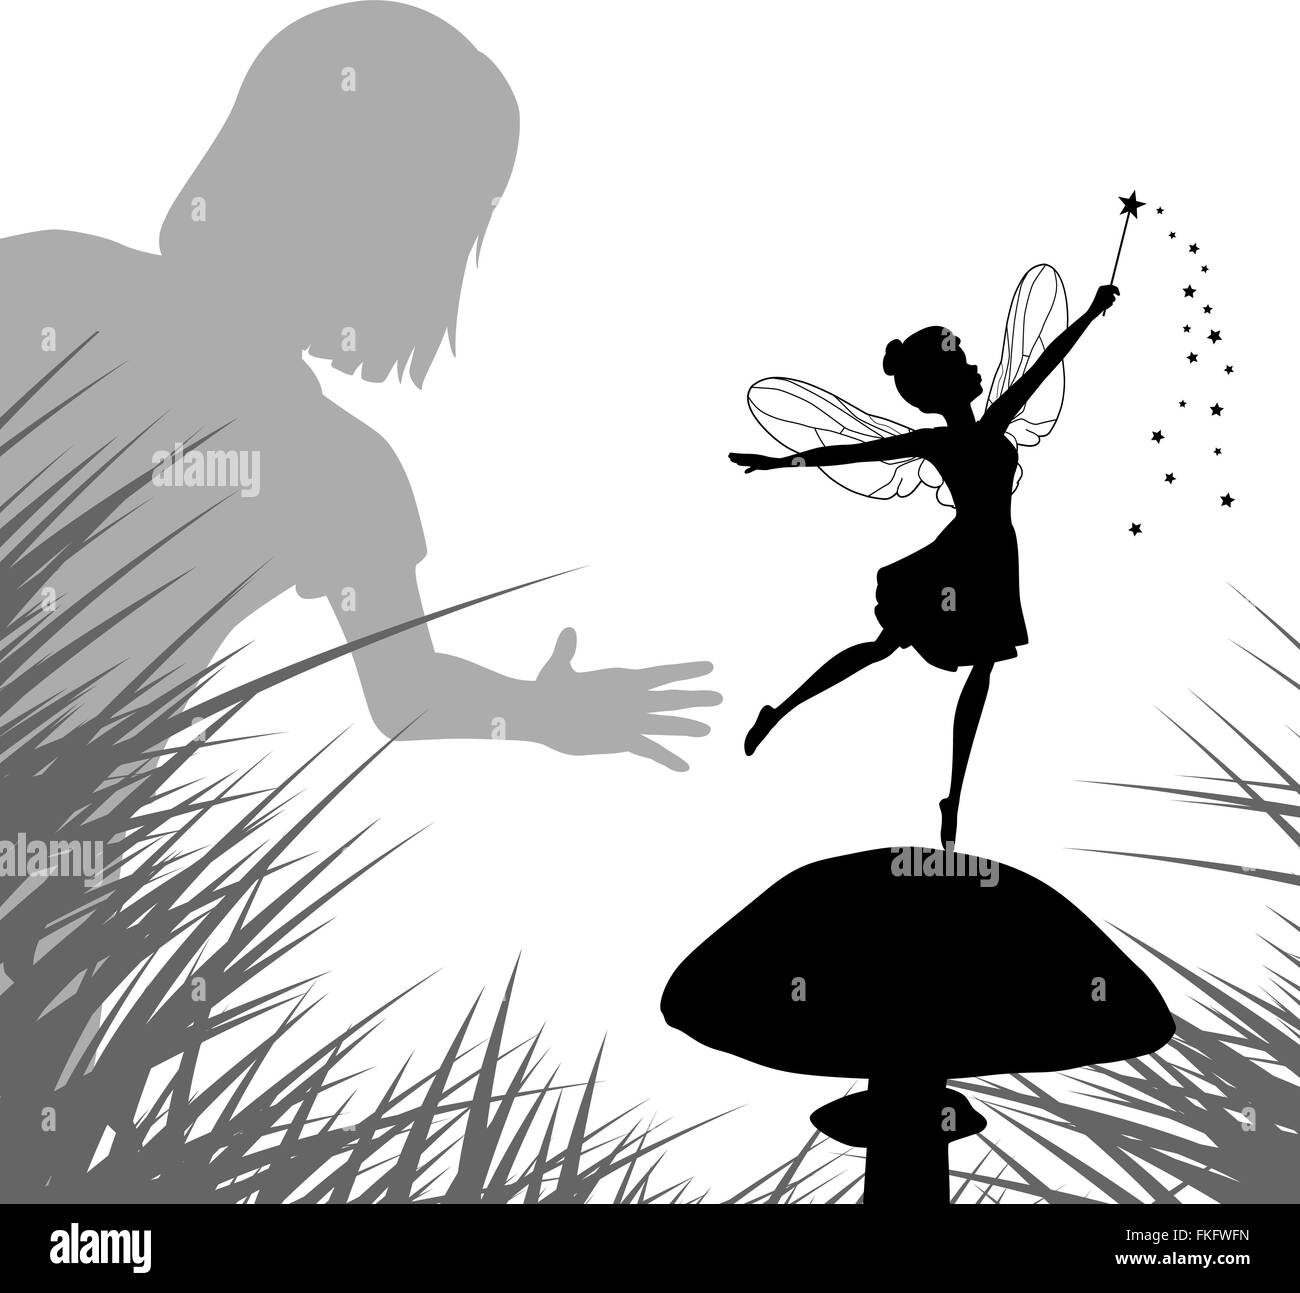 Spe8 illustration vectorielle modifiable d'une jeune fille recherche une fée dansant sur un champignon Illustration de Vecteur